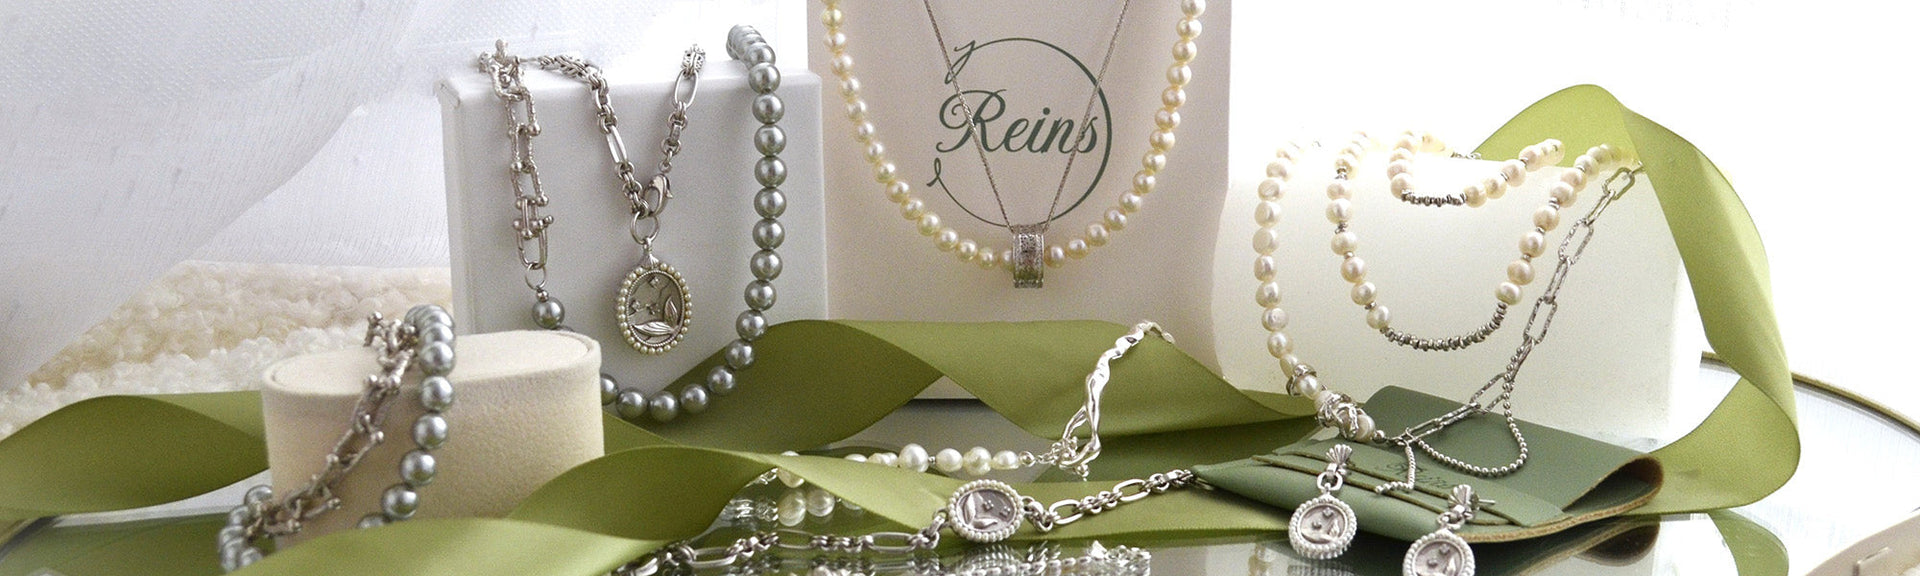 Bijuterii din argint cu pietre semipretioase si perle inspirate de ocean – Siren’s Pearl